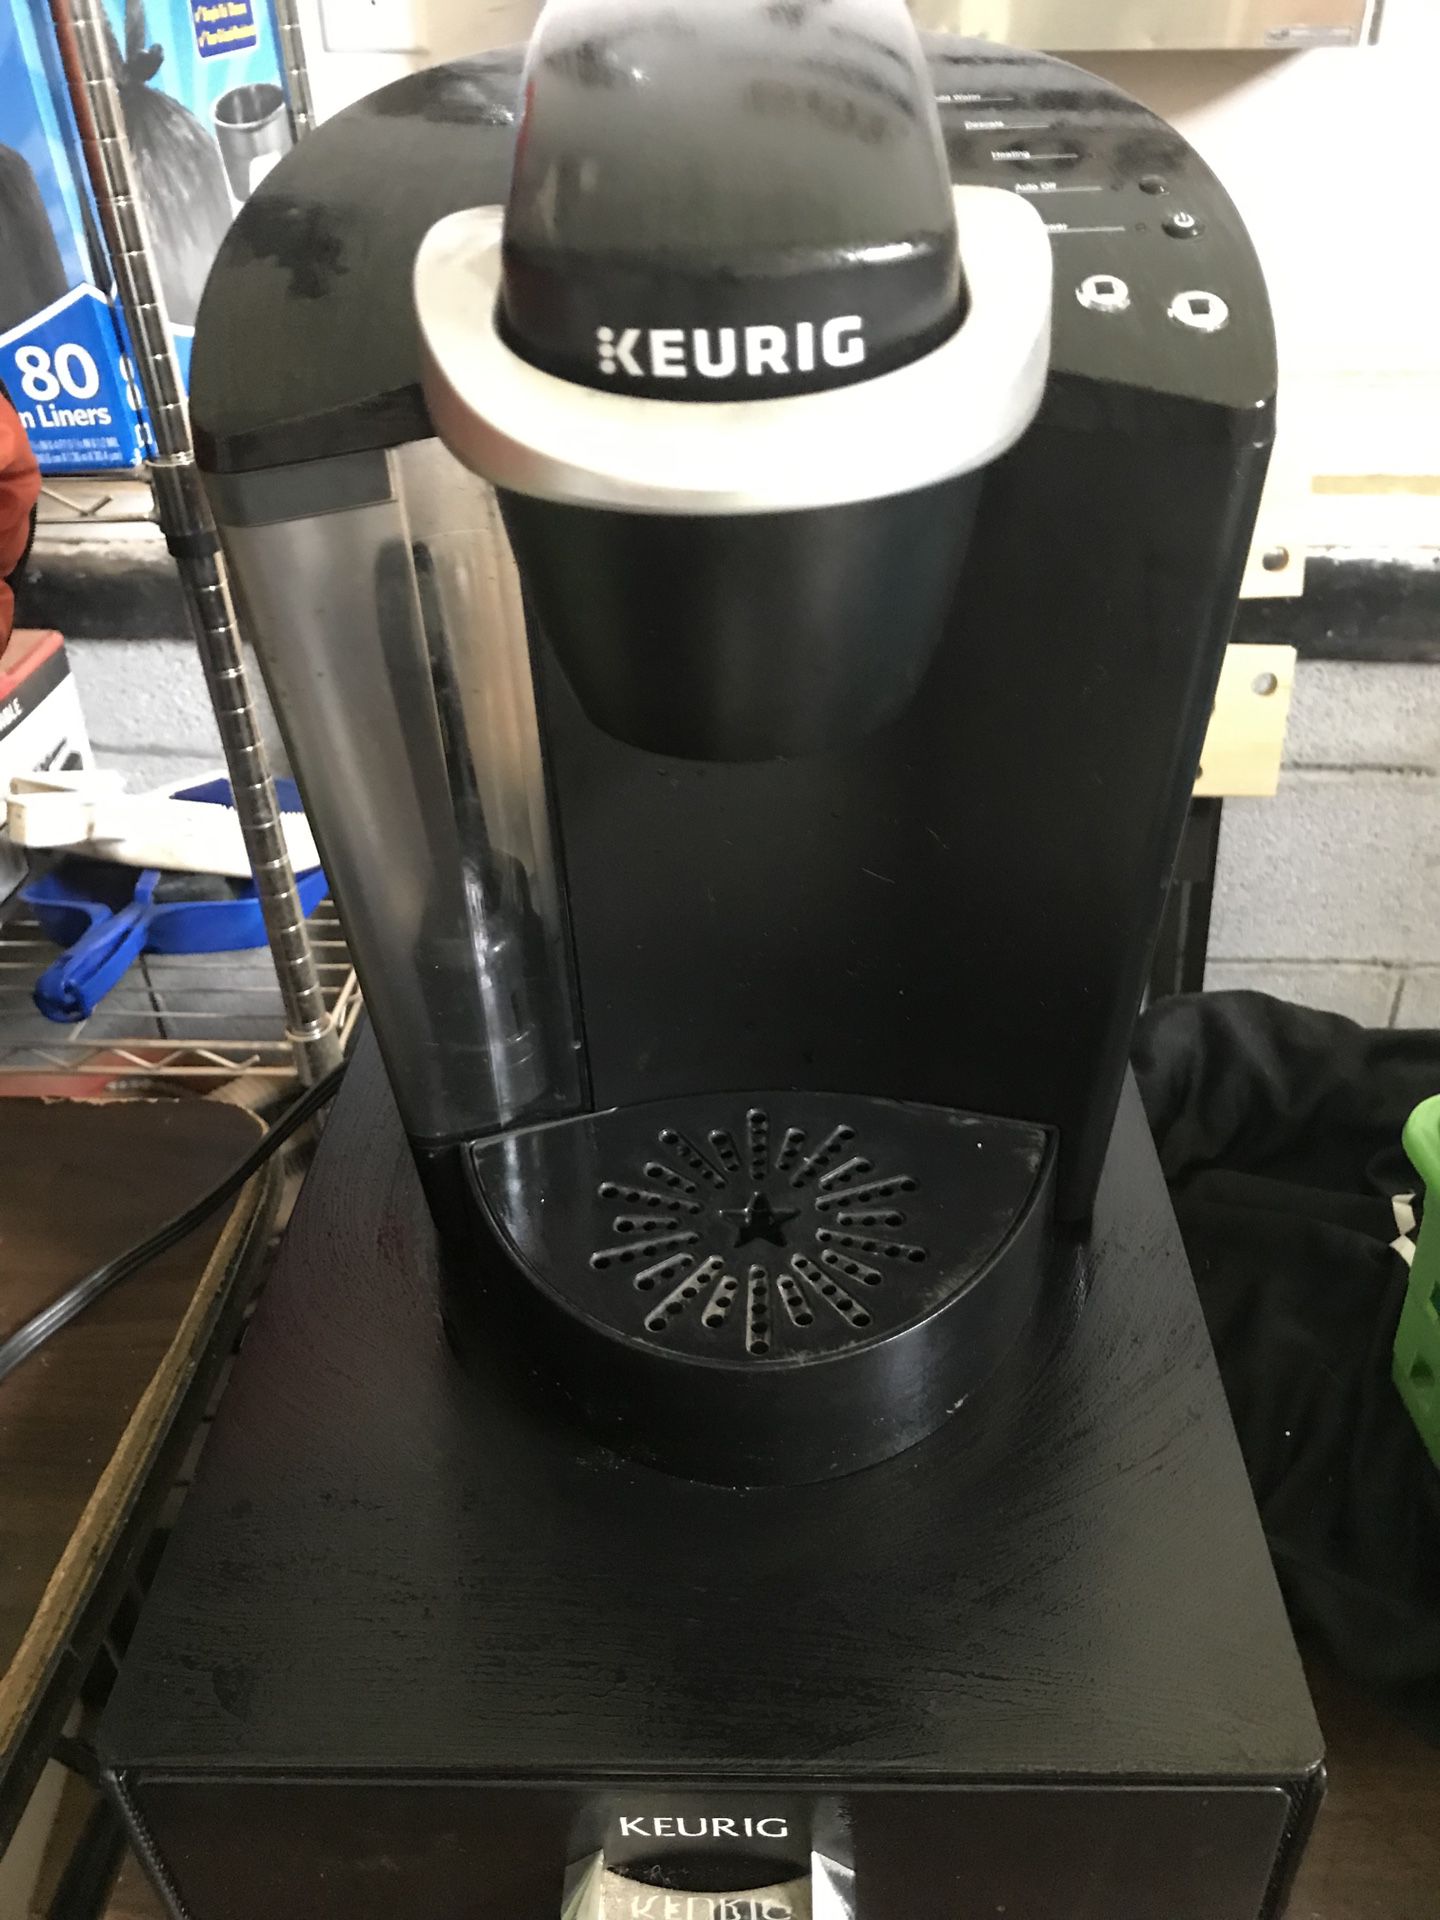 Keurig and k cup drawer